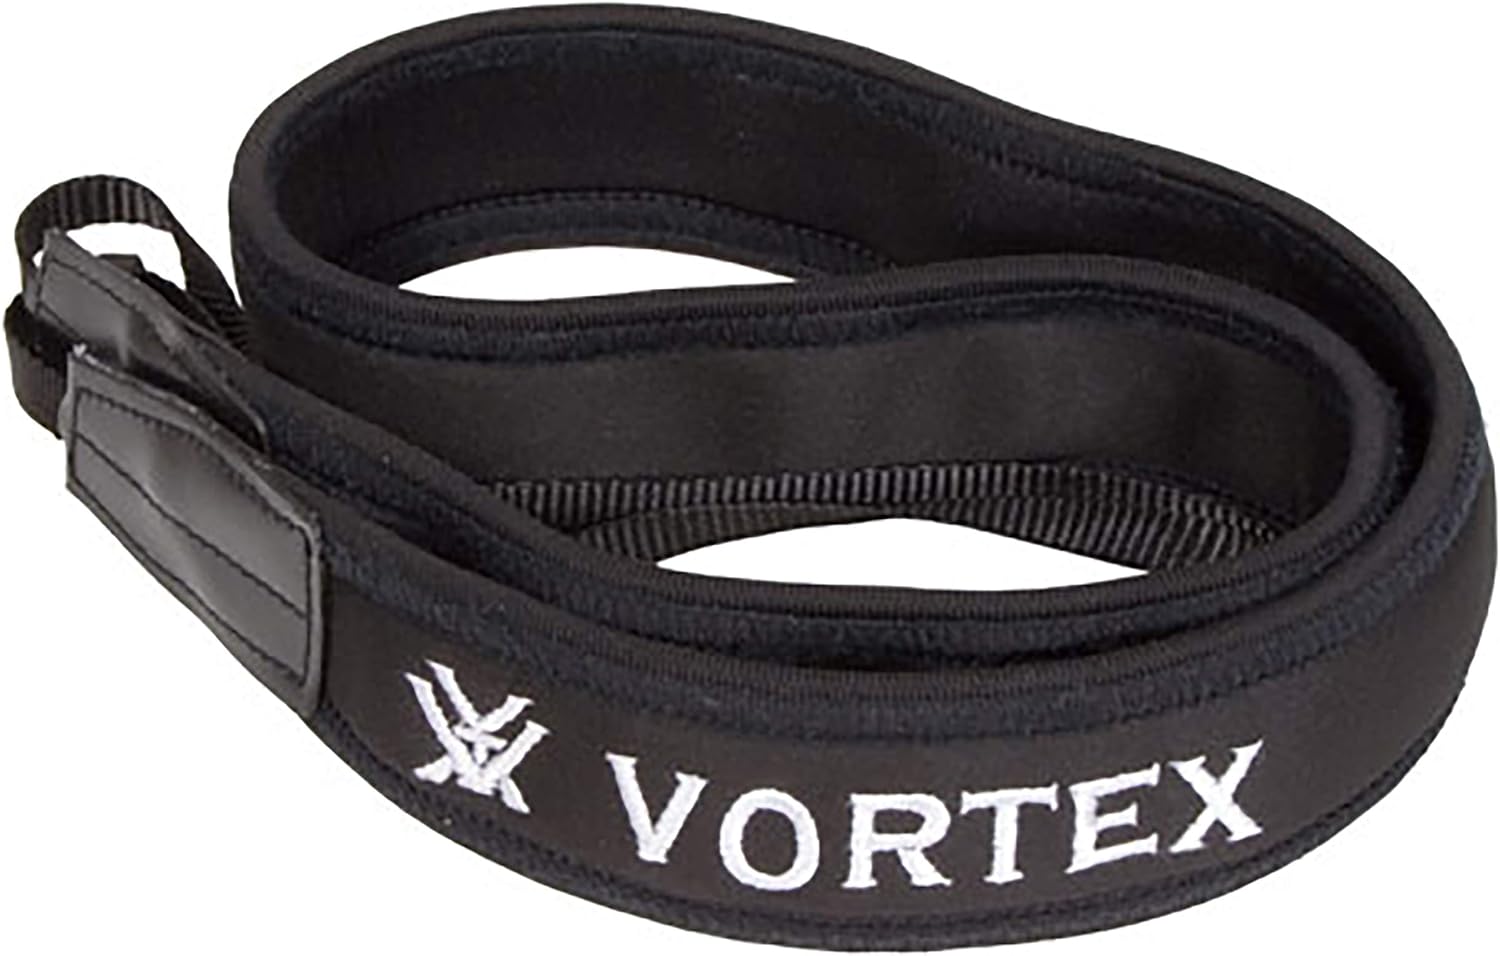 Vortex Optics Archer’s Binocular Strap Review